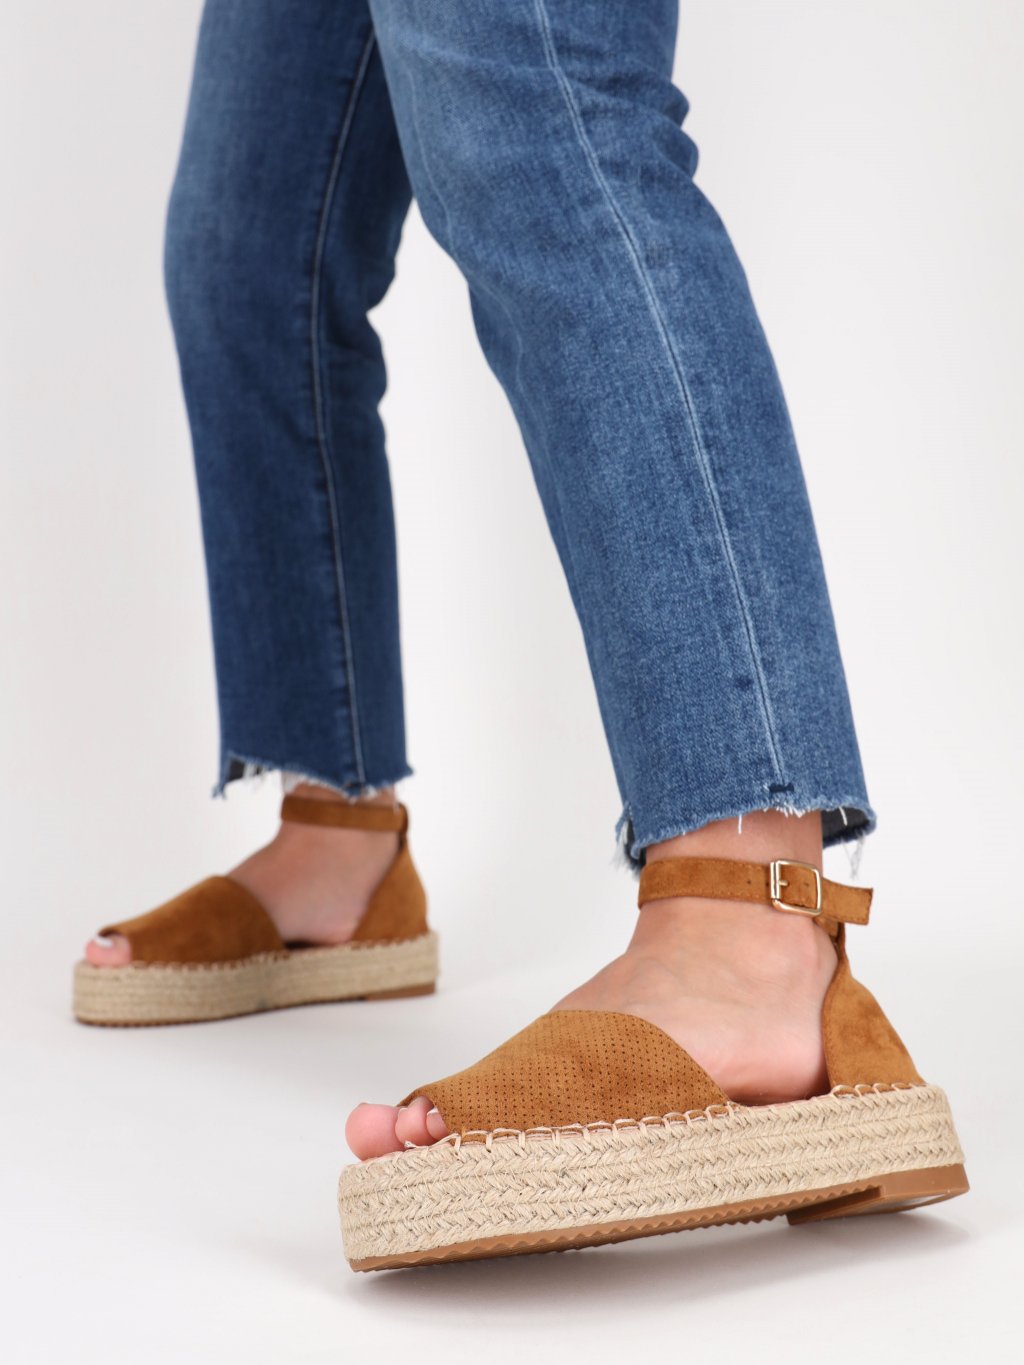 semisove damske sandale na platforme hnede SEZZ21CAMEL 5